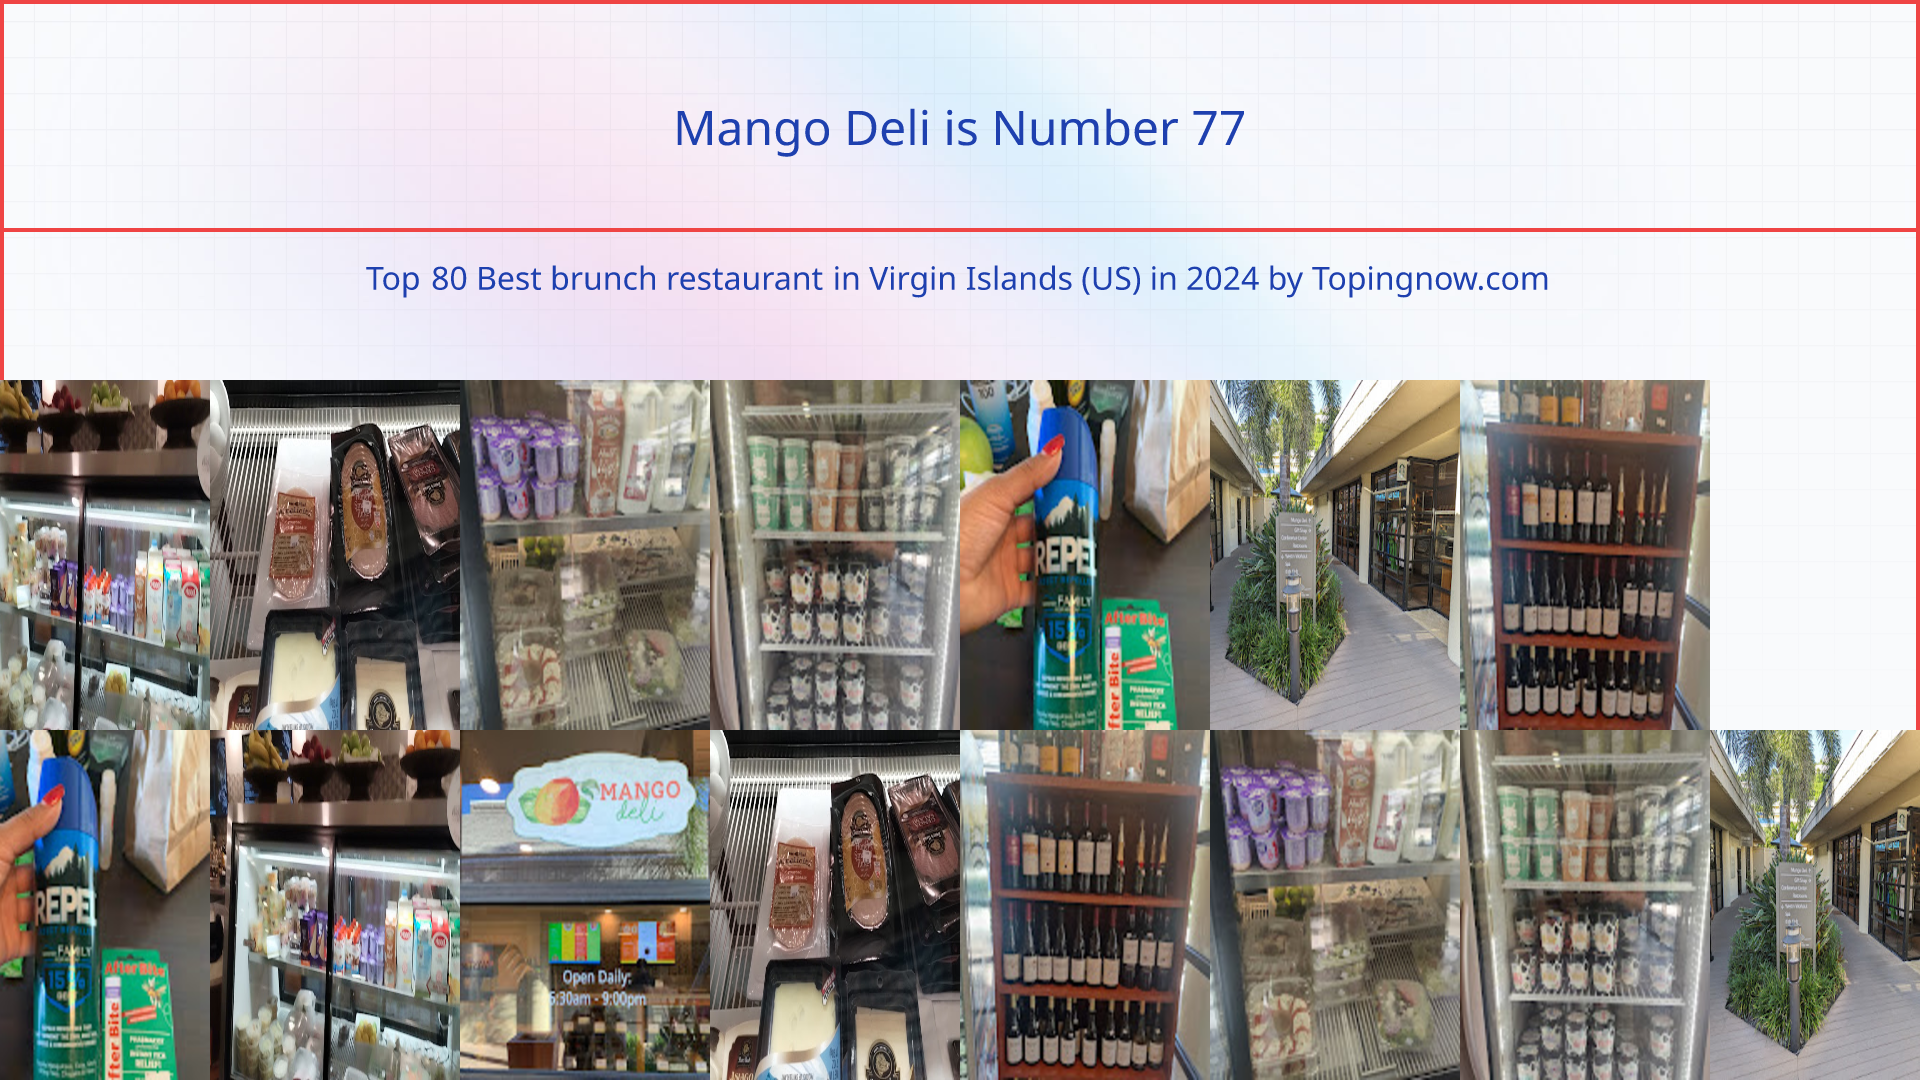 Mango Deli: Top 80 Best brunch restaurant in Virgin Islands (US) in 2024